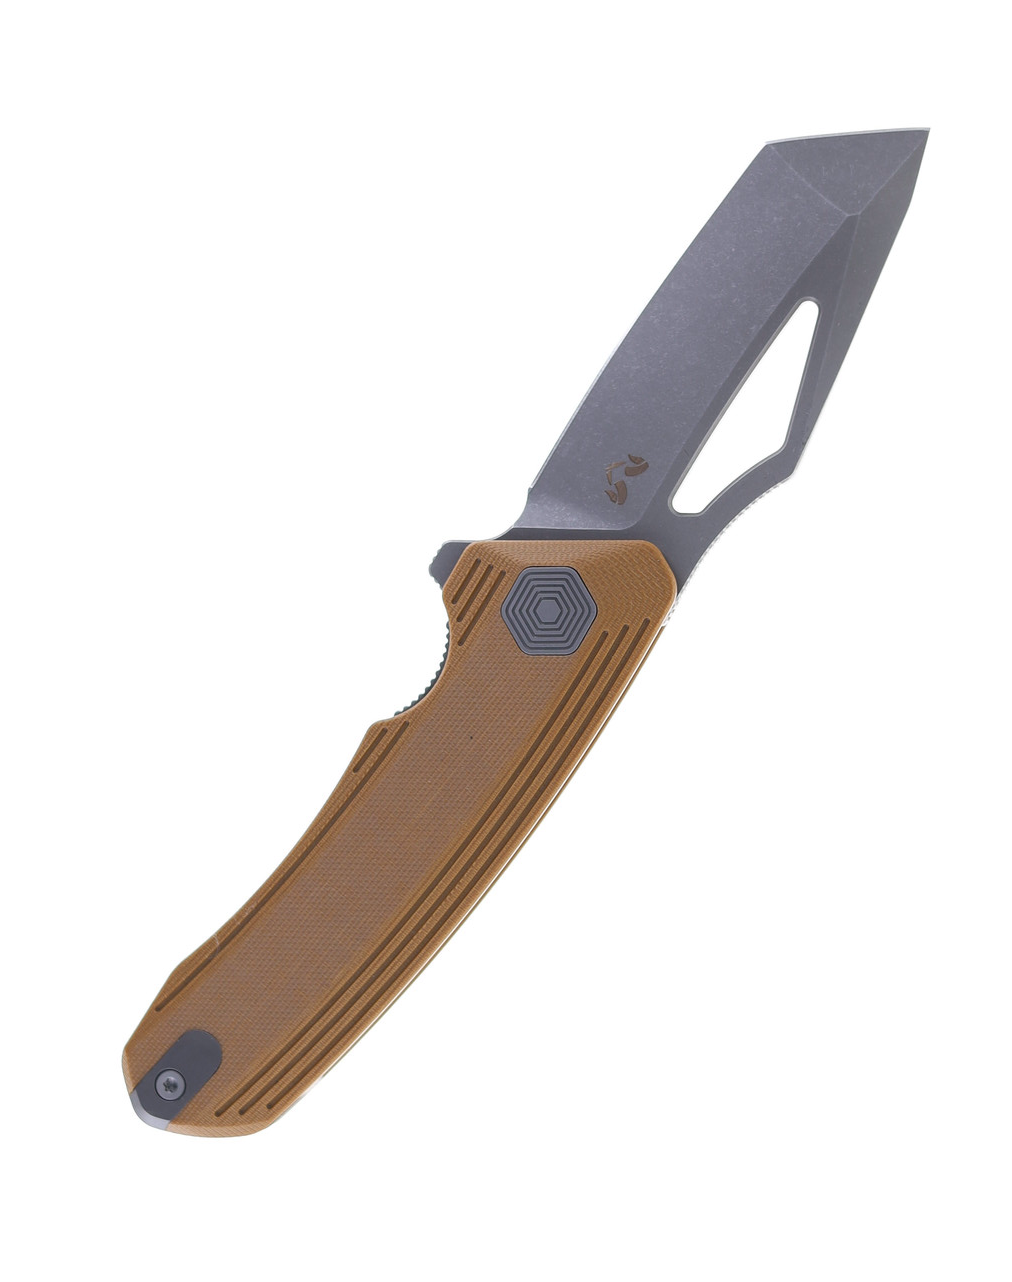 product image for Damned Designs Banshee Folding Knife Jade G10 Handle N690 Tanto Plain Edge Stonewash Finish